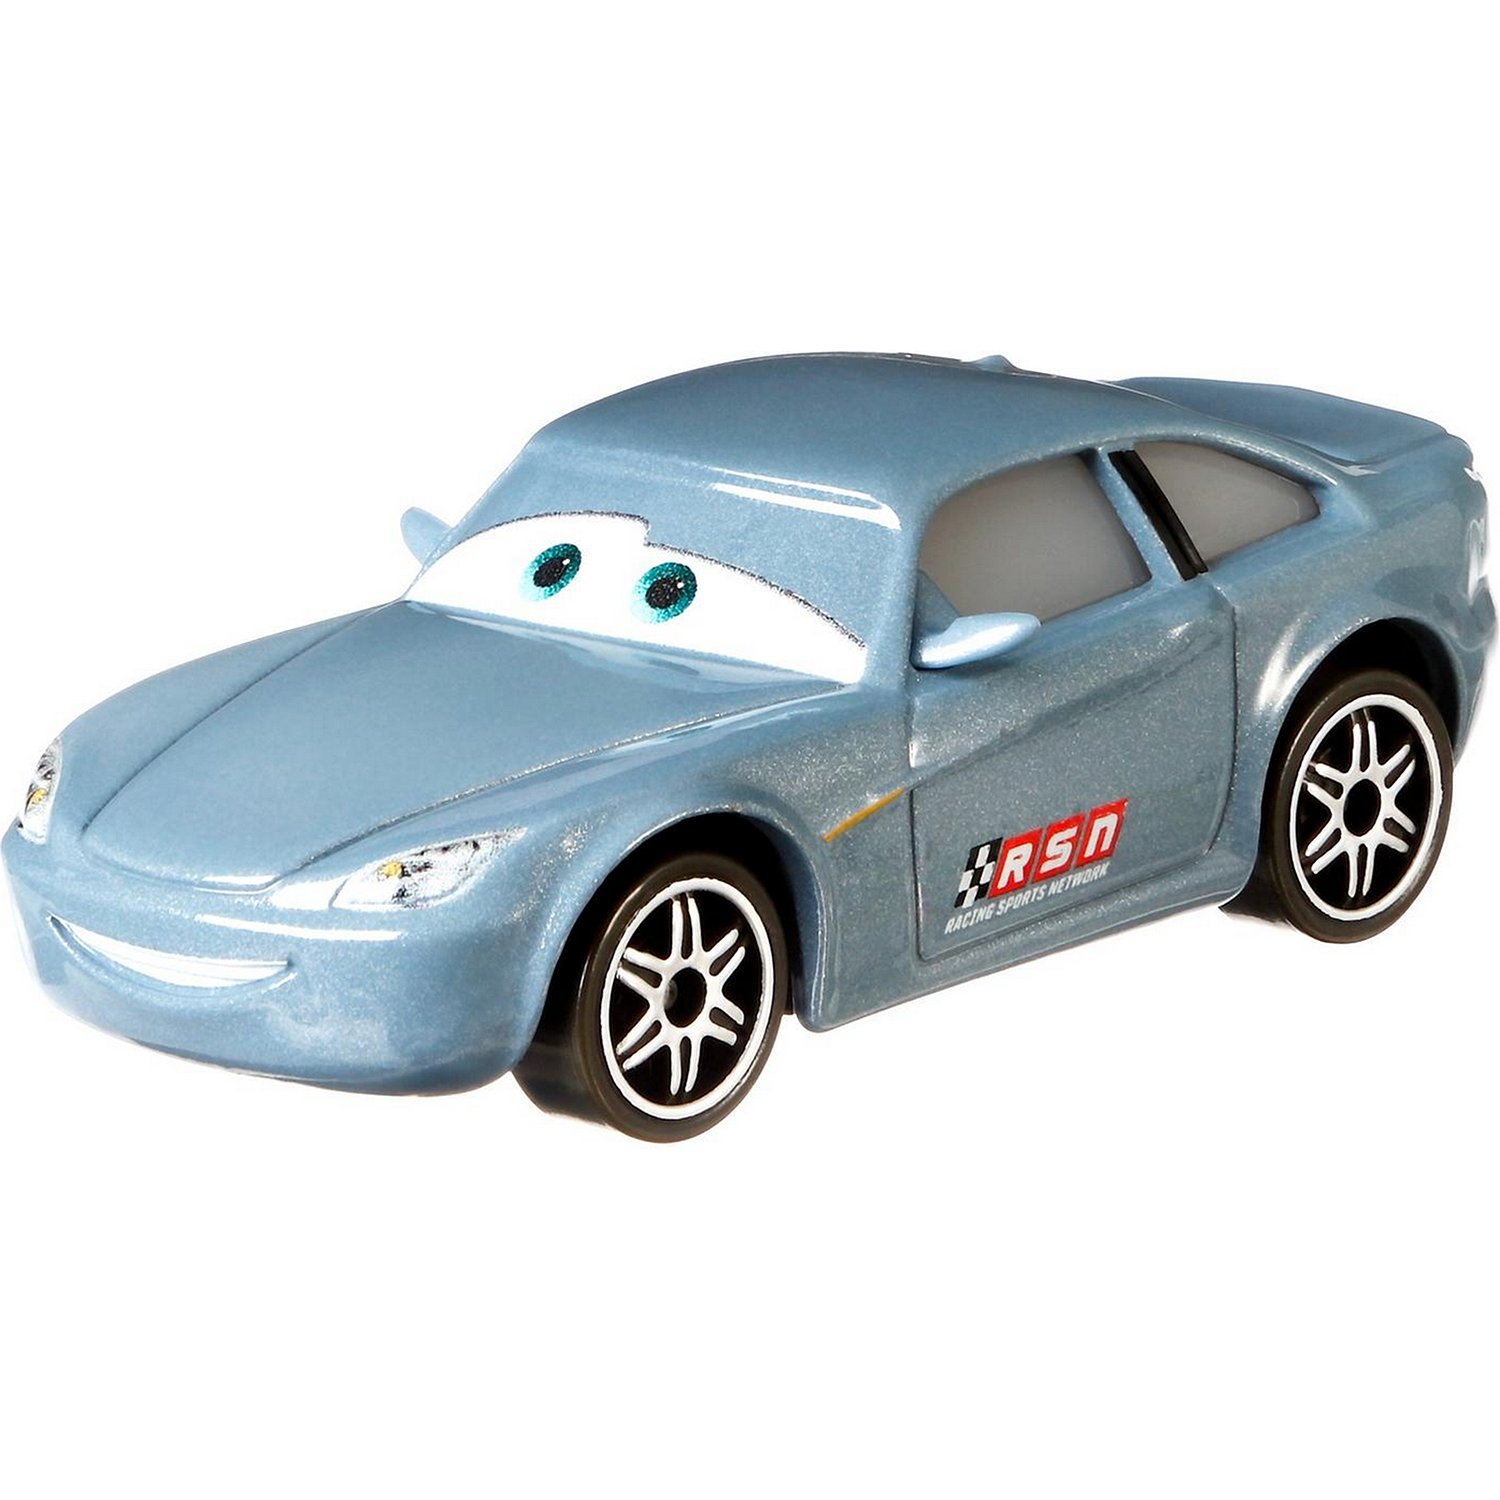 Машинка Cars Герои мультфильмов Боб Катласс GXG45 машинка mattel cars герои мультфильмов grr77isney pixar cars суоки базовая dxv29 grr77